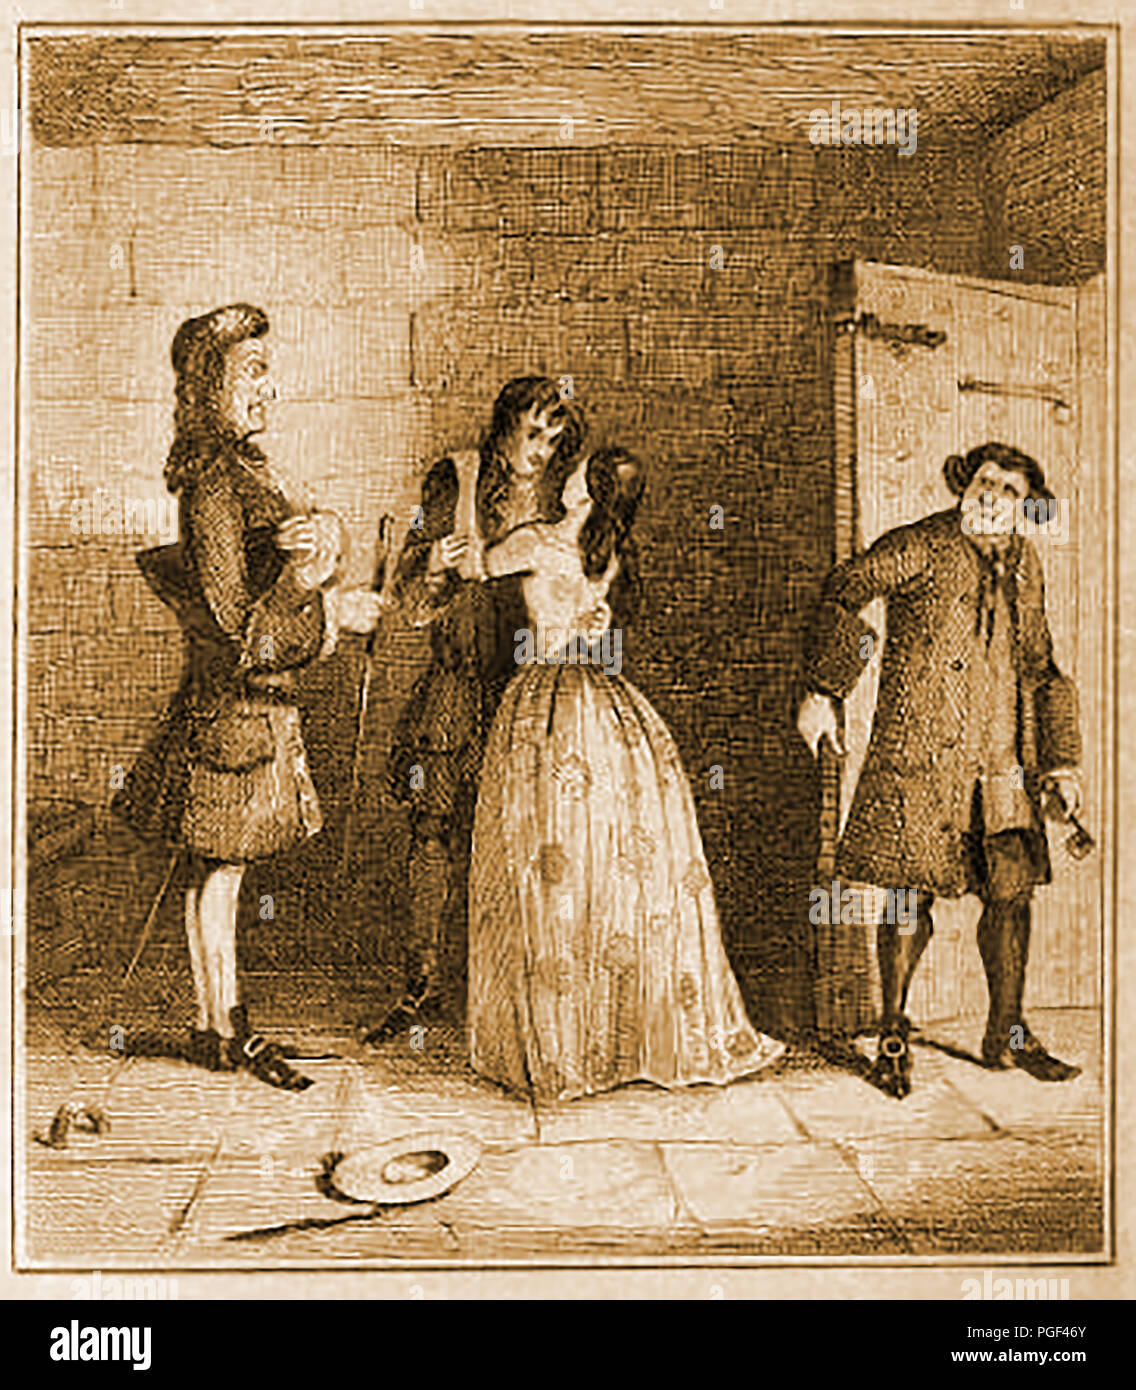 Una visita a Claude Duval o du Vall mentre in prigione - (1643 - 1670) era un famigerato highwayman francese attiva nel restauro in Inghilterra. Mai violenti e sempre cortese tuttavia egli morì a Tyburn gallows tree dopo essere stato trovato colpevole di sei rapine.. Foto Stock